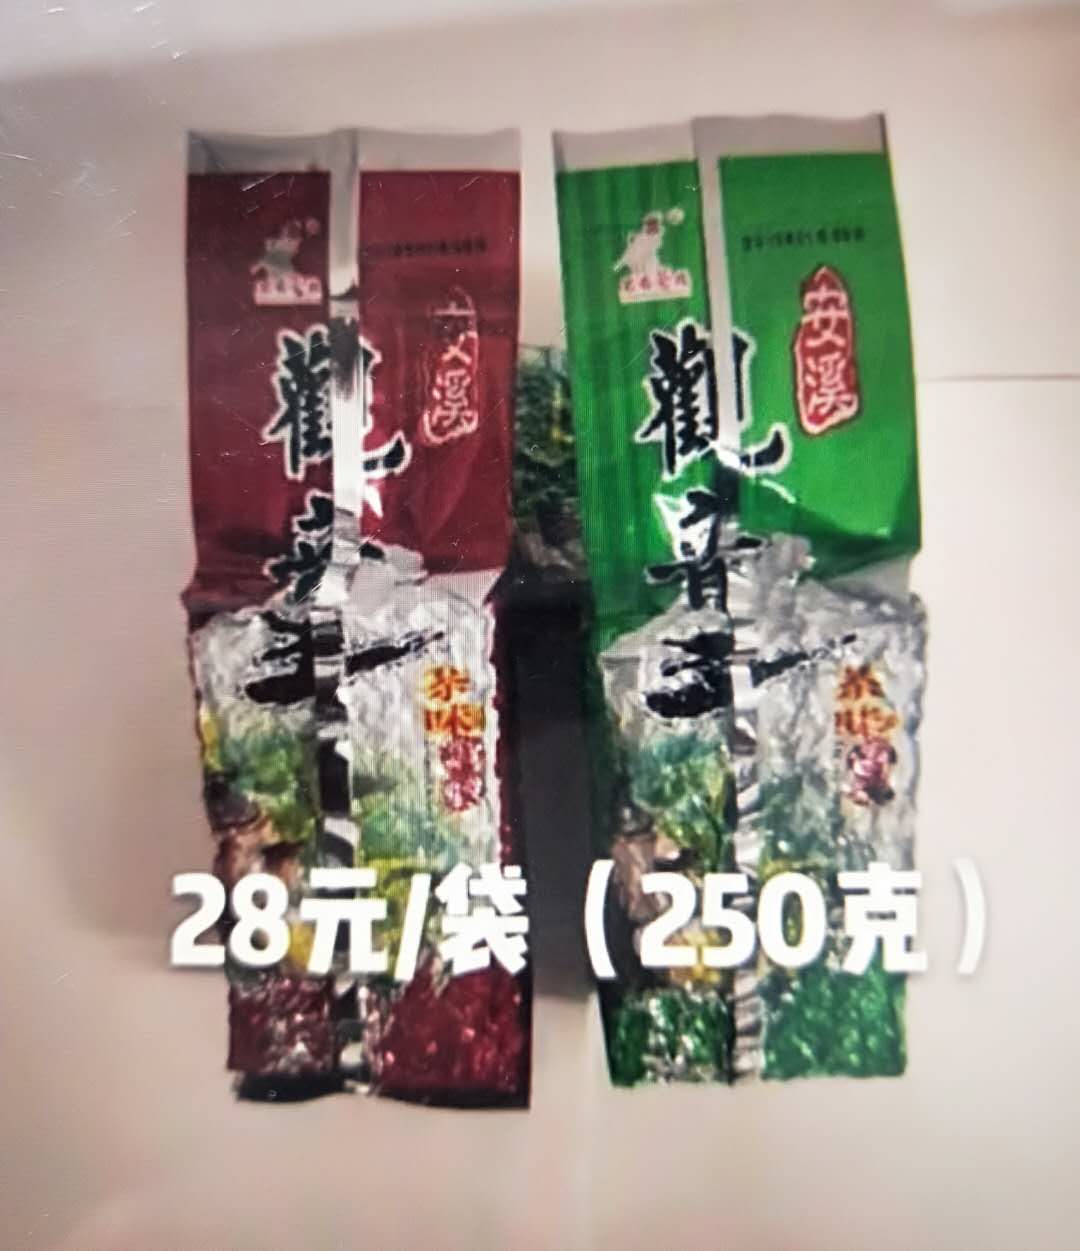 安溪观音王 28元/袋 (250克/袋)  180元/箱 (10袋/箱)